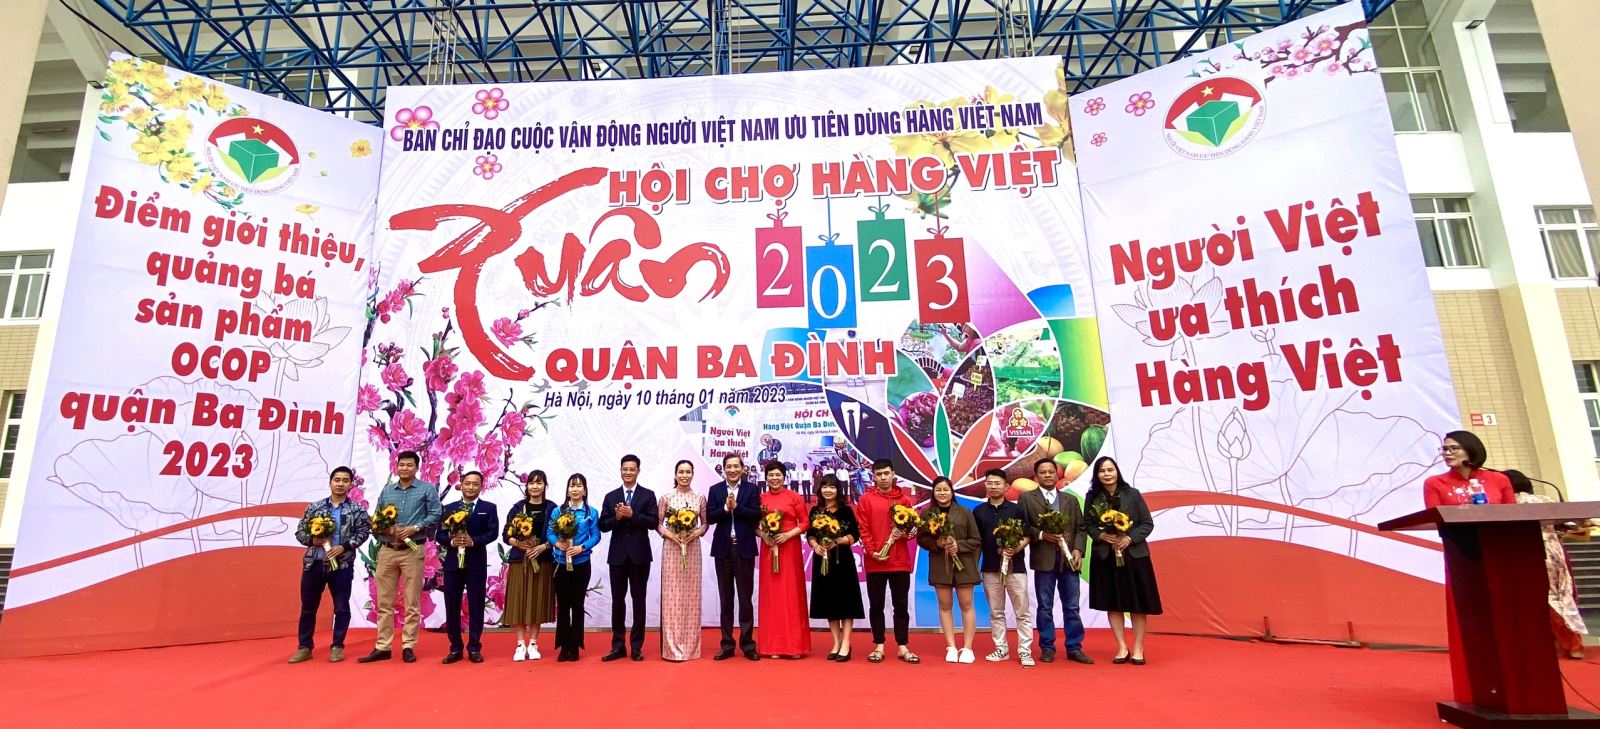 Cùng TPCare Tham Gia Hội Chợ Hàng Việt - Quận Ba Đình 2023